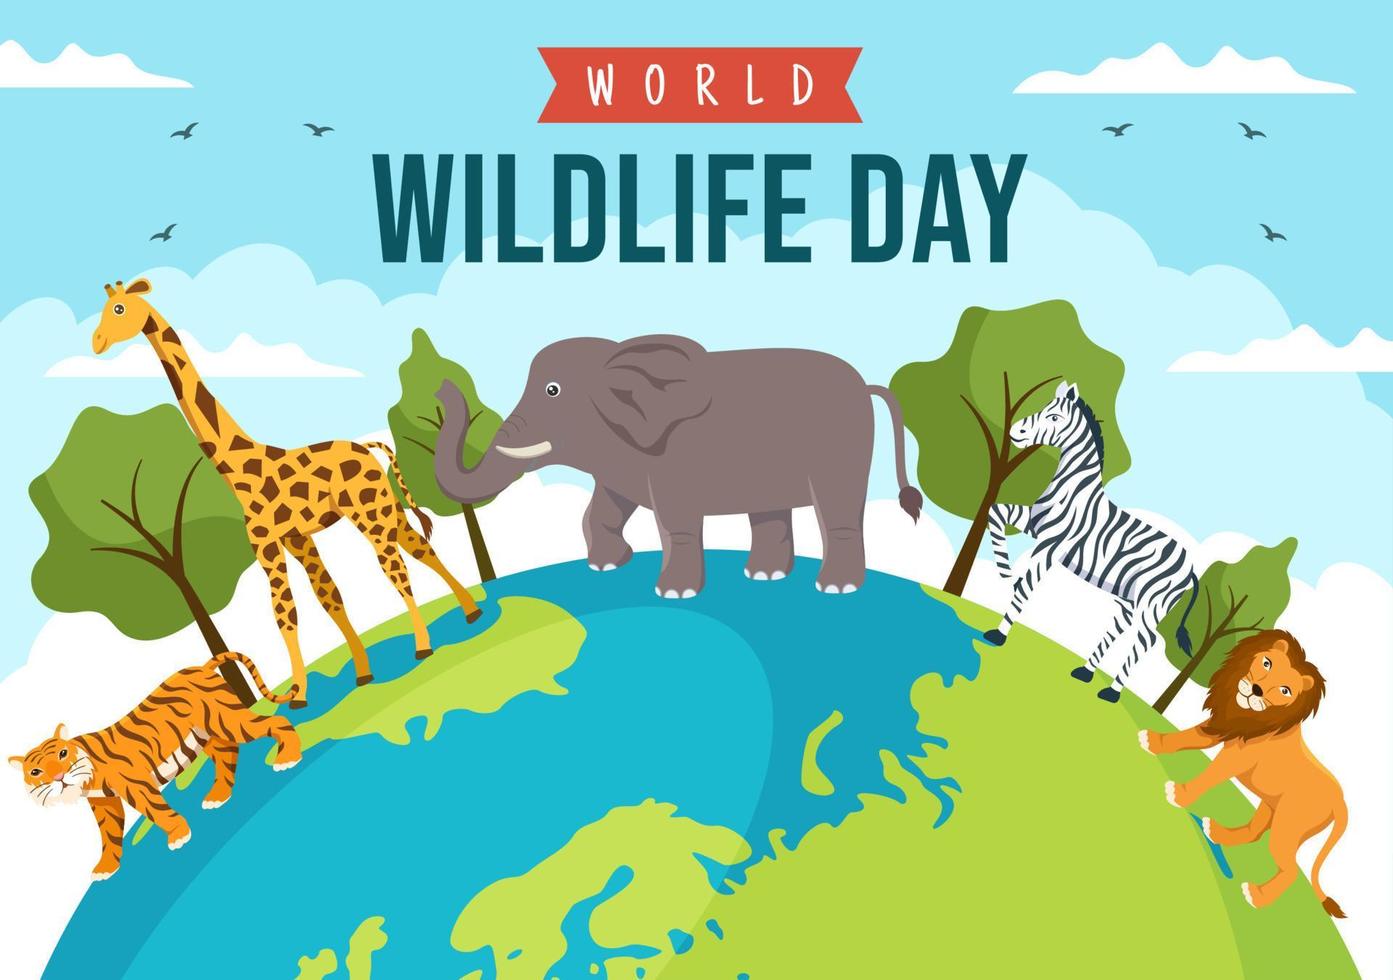 journée mondiale de la faune le 3 mars pour sensibiliser les animaux, planter et préserver leur habitat dans la forêt en dessin animé plat illustration de modèle dessiné à la main vecteur